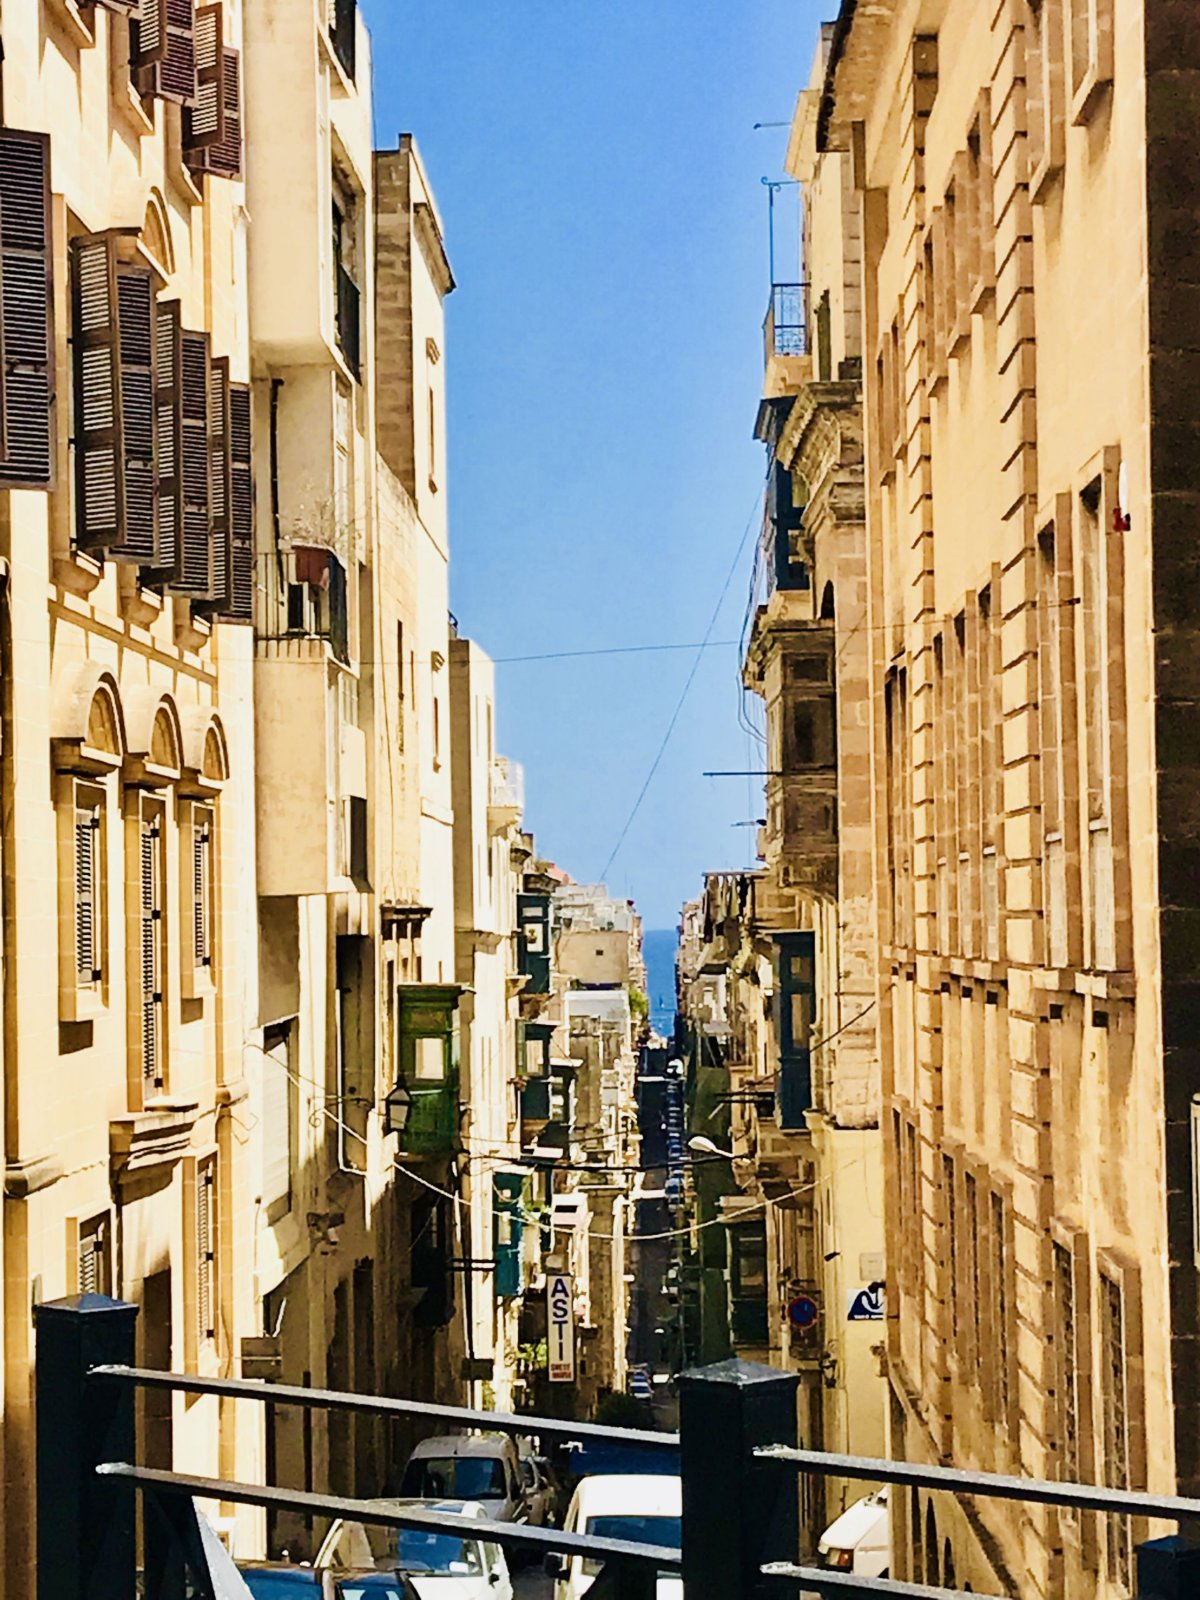 Valleta